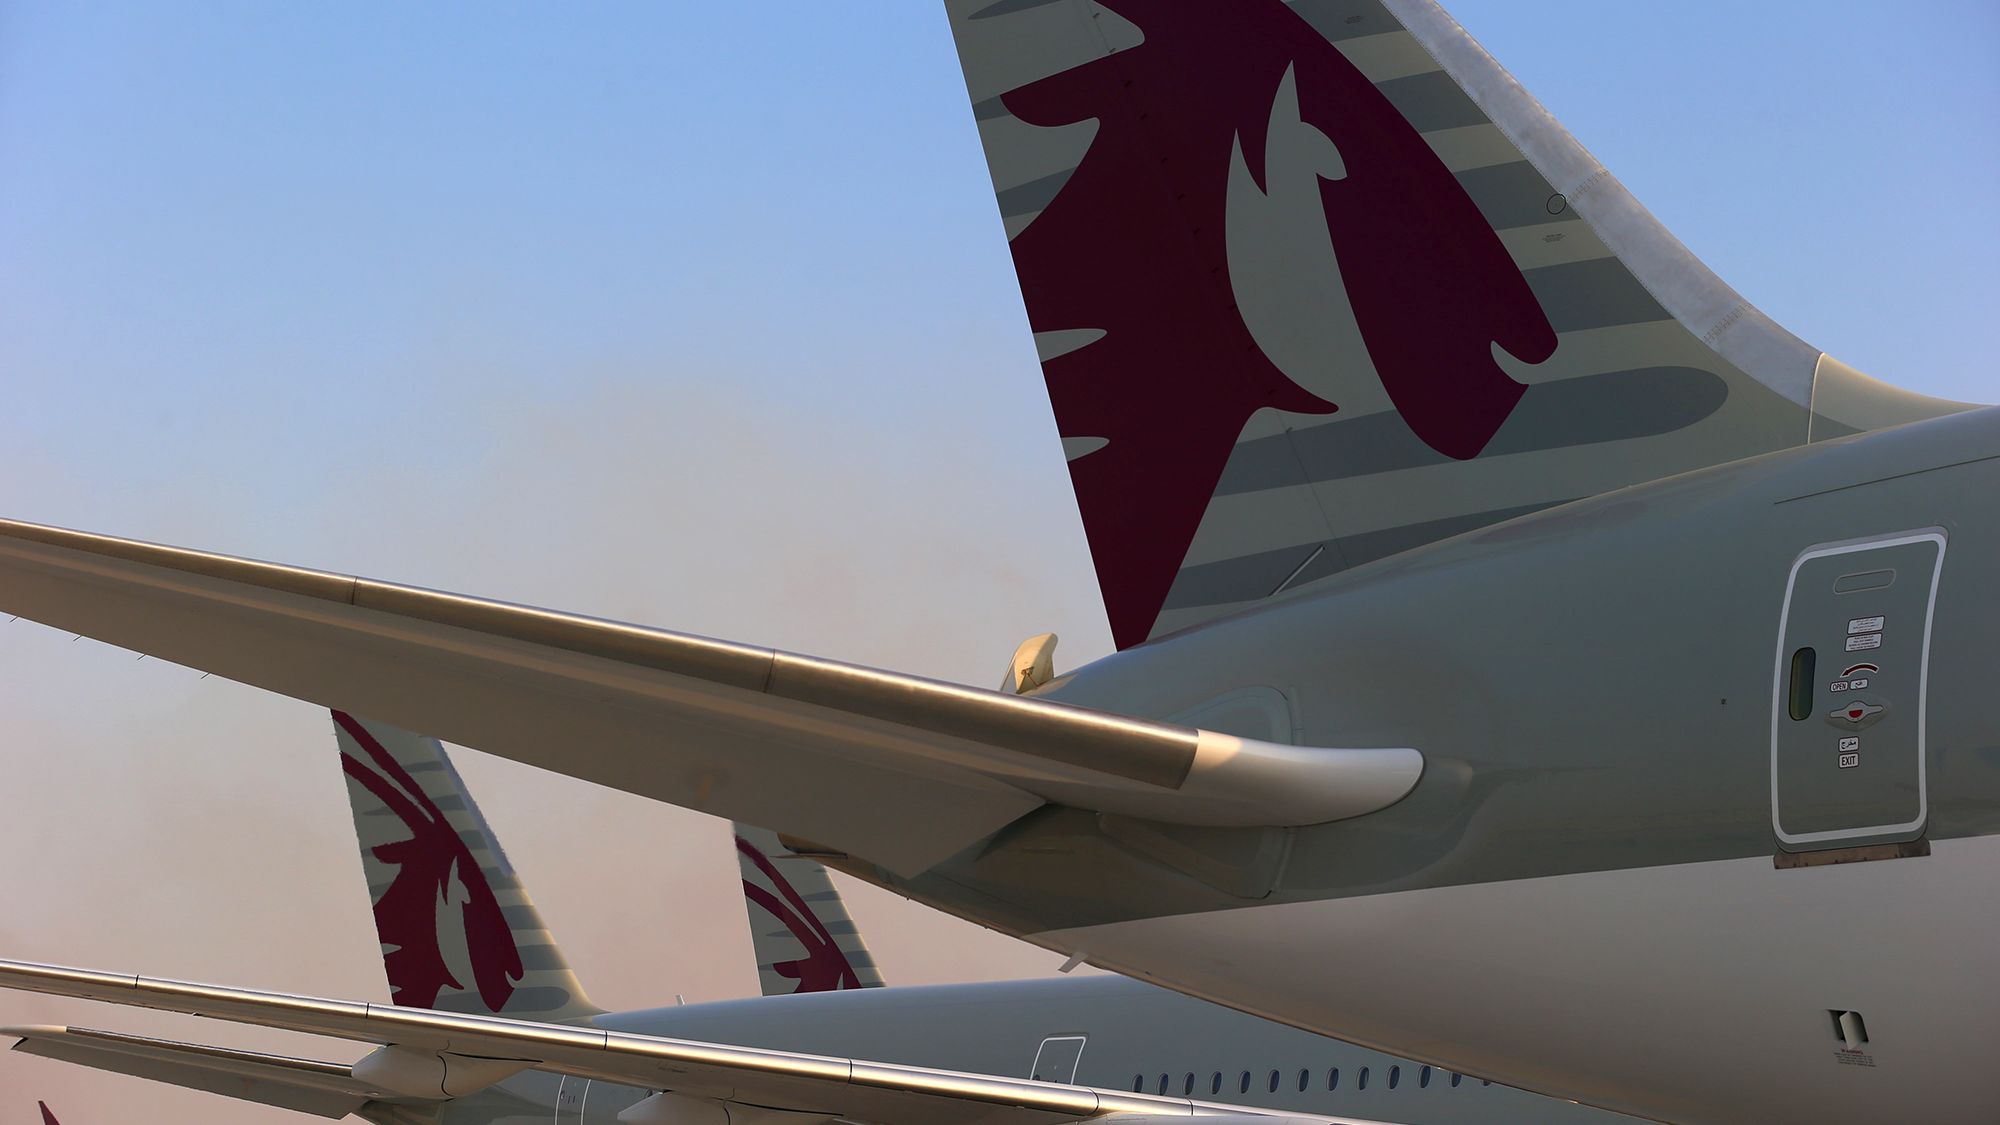 Qatar Airways planes pictured in Dubai, United Arab Emirates, in 2015.